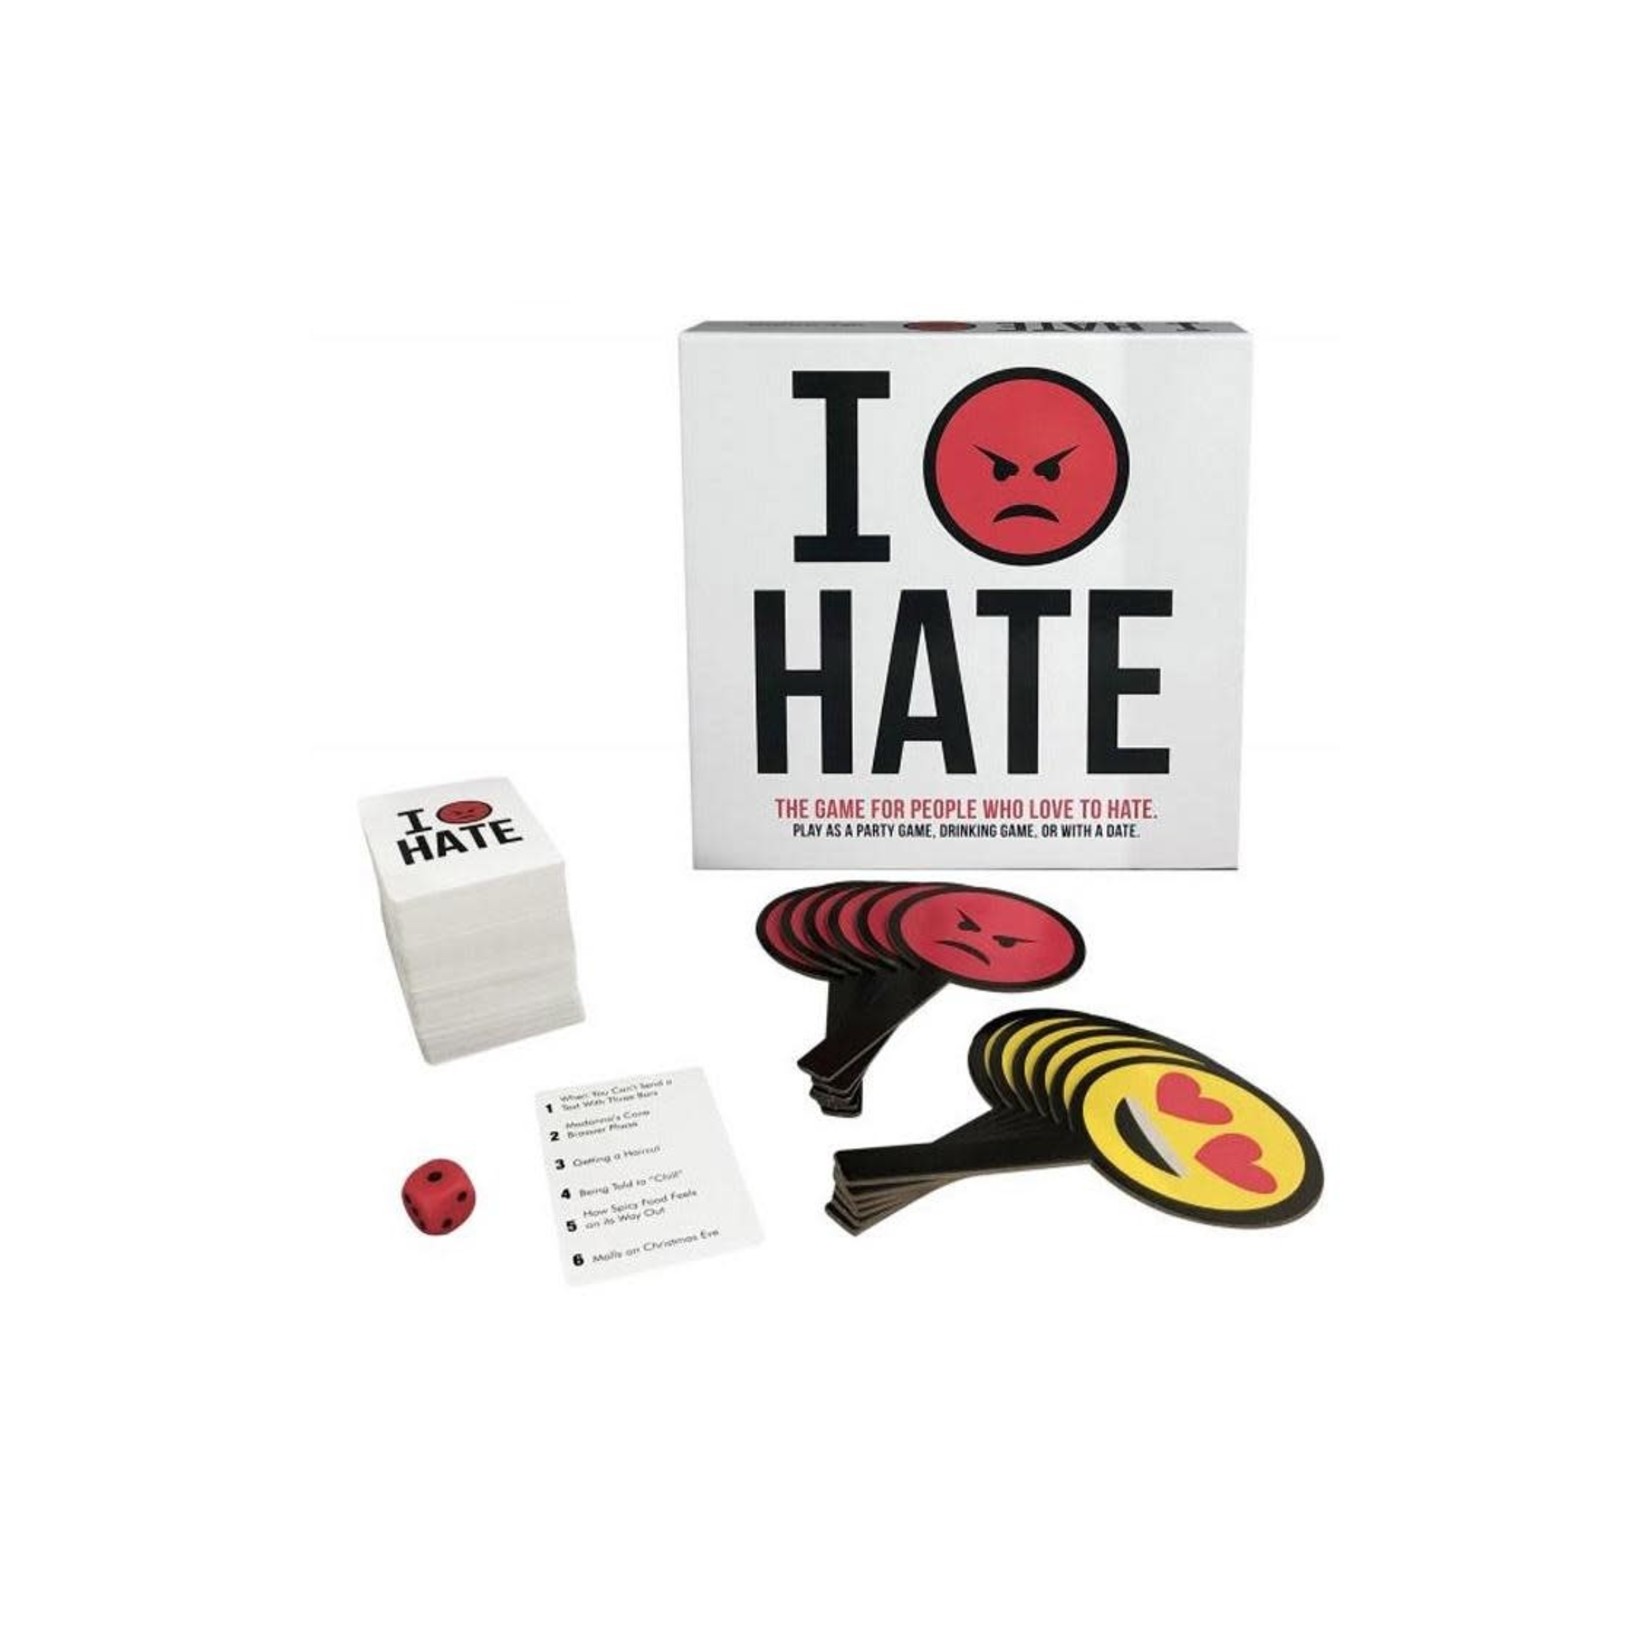 I Hate!